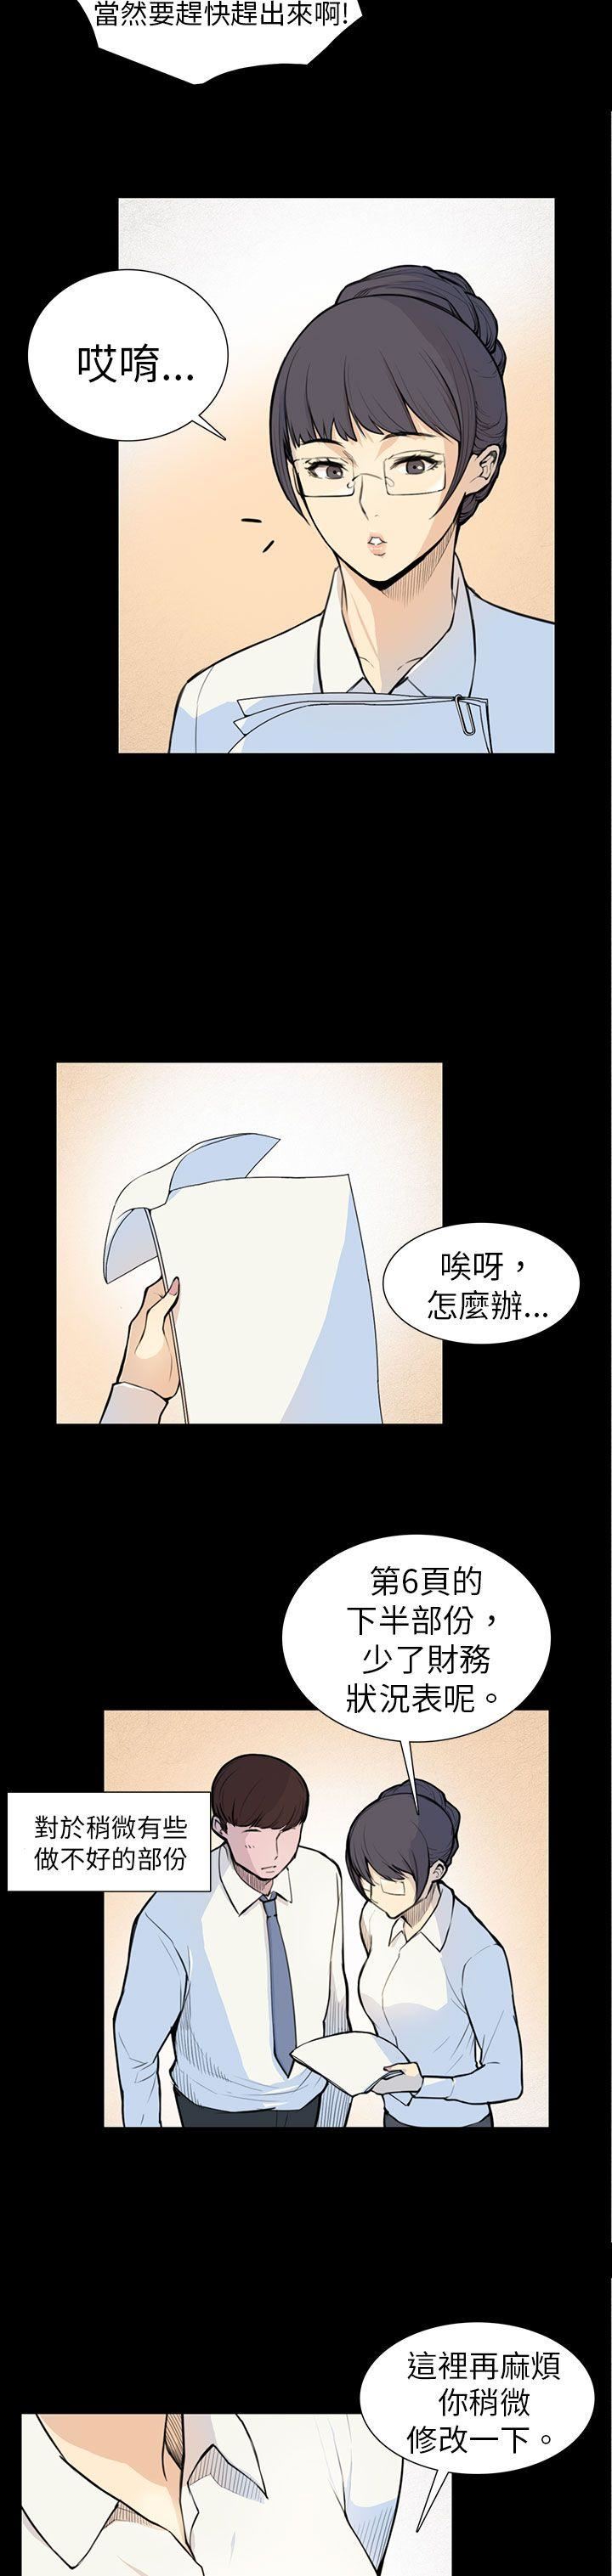 韩国污漫画 斯德哥爾摩癥候群 第5话 8